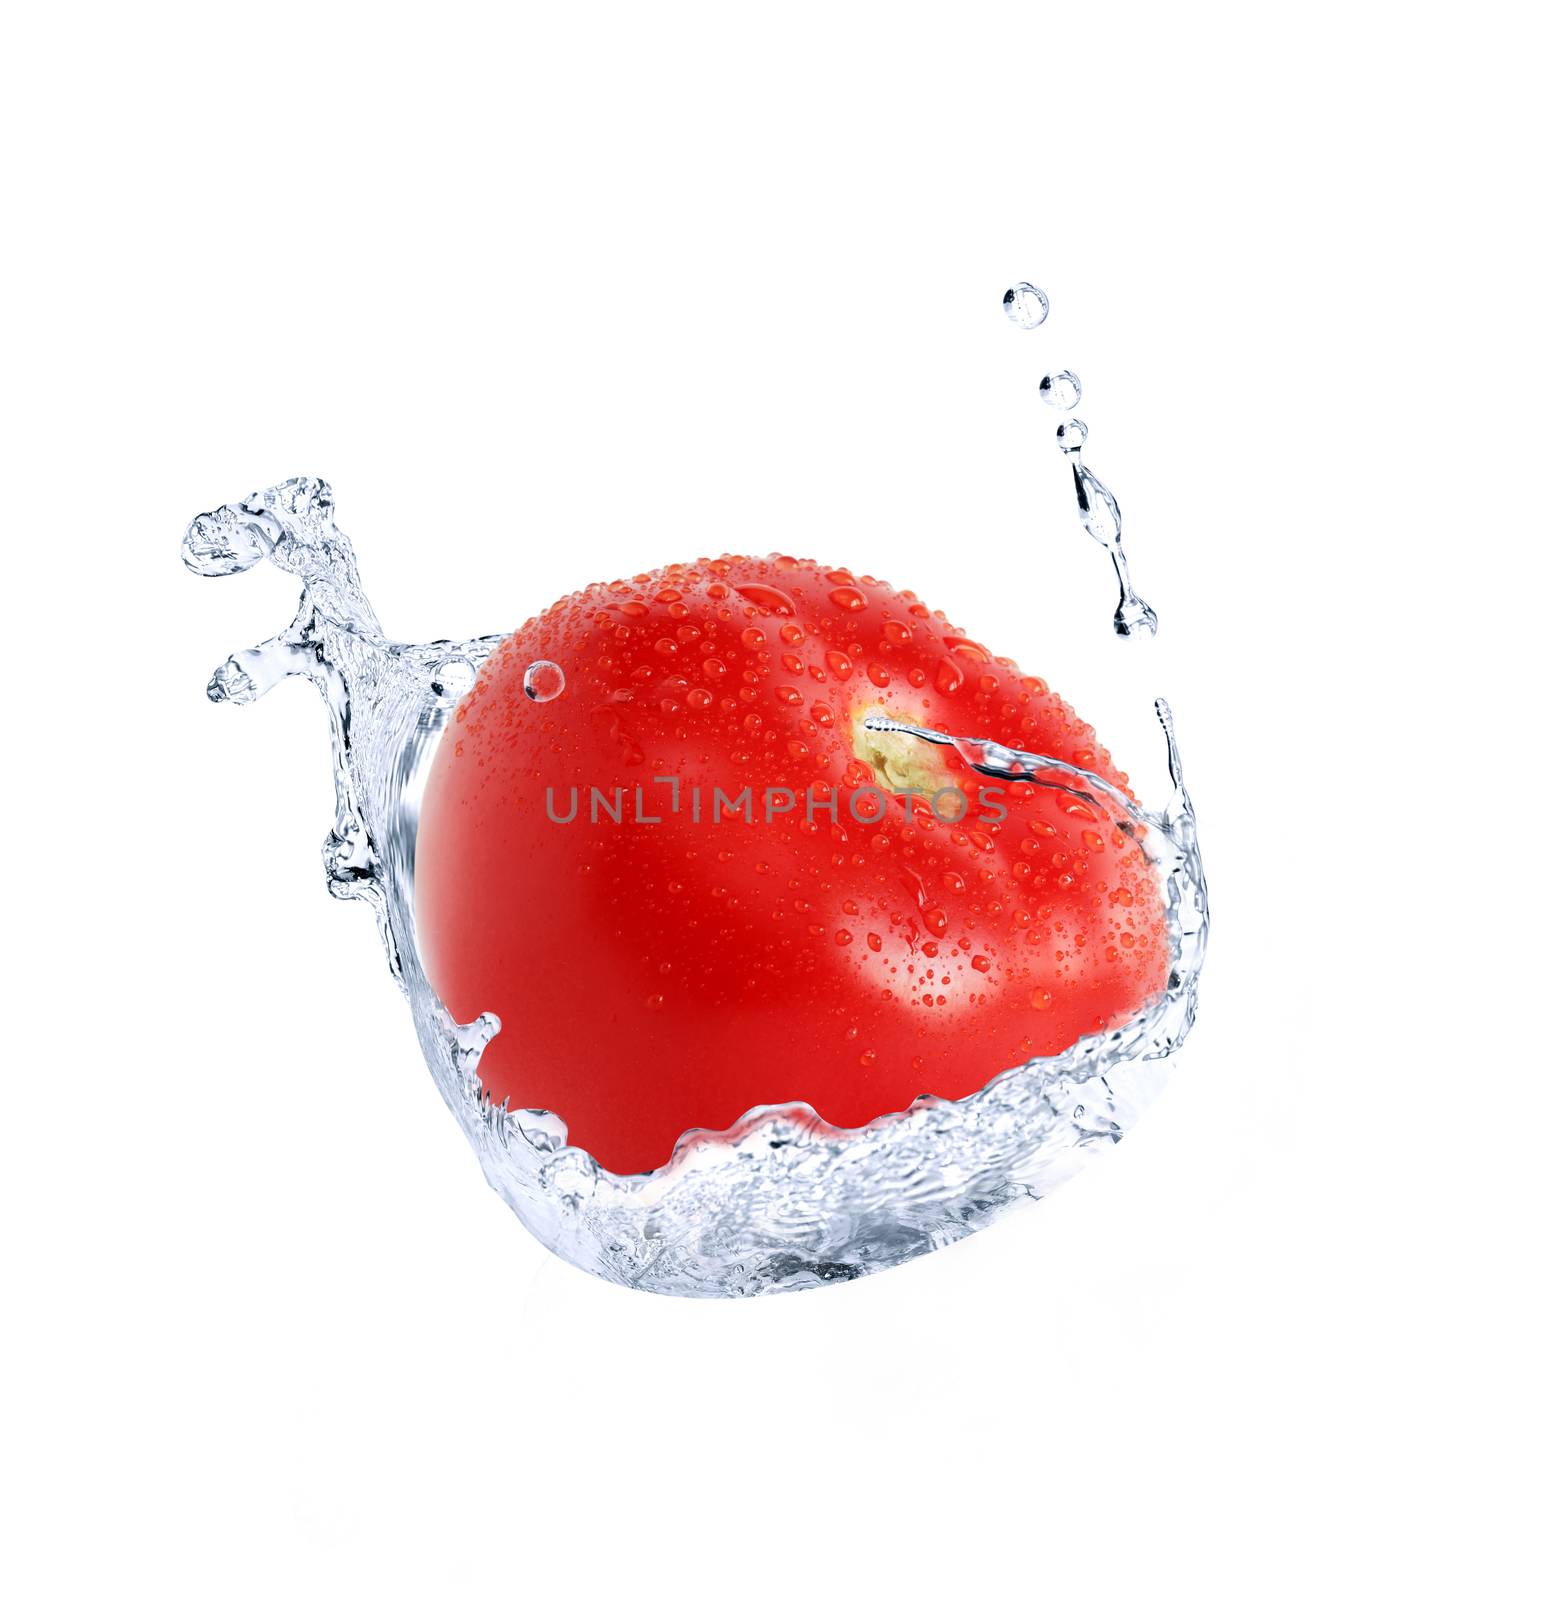 Tomato In Water Splash by kvkirillov